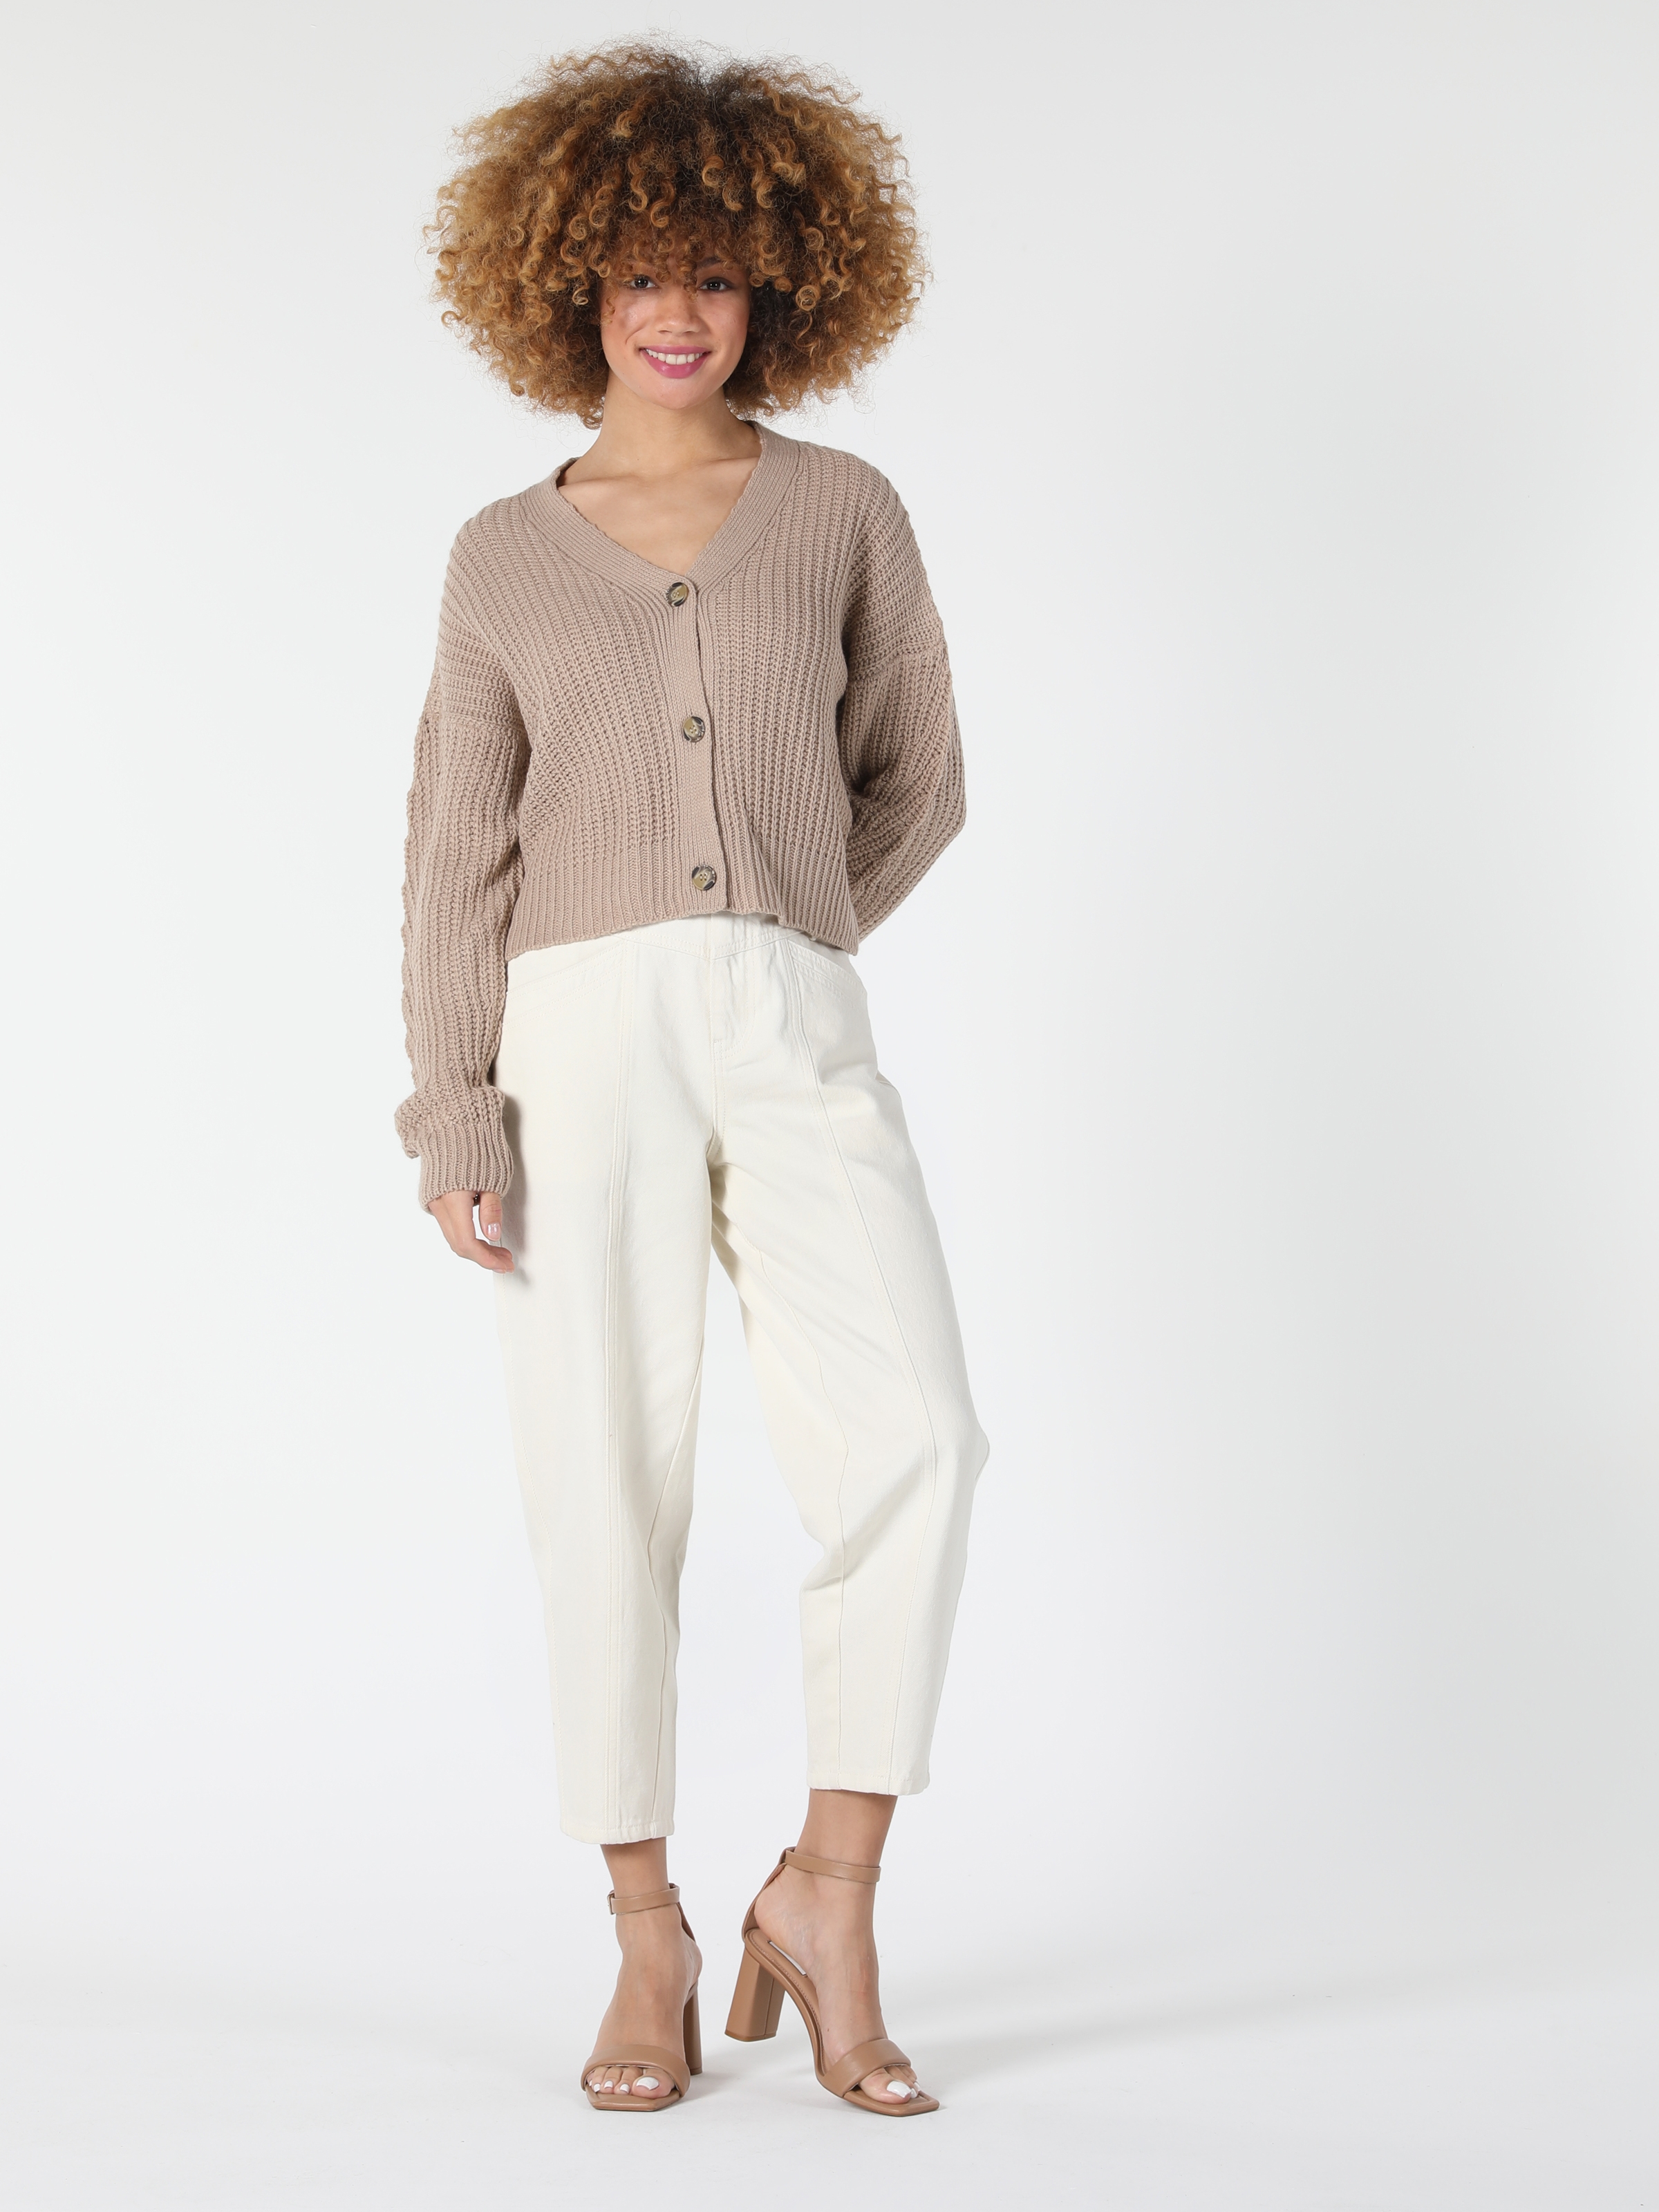 Afficher les détails de Cardigan Femme Beige Comfort Fit Knitwear